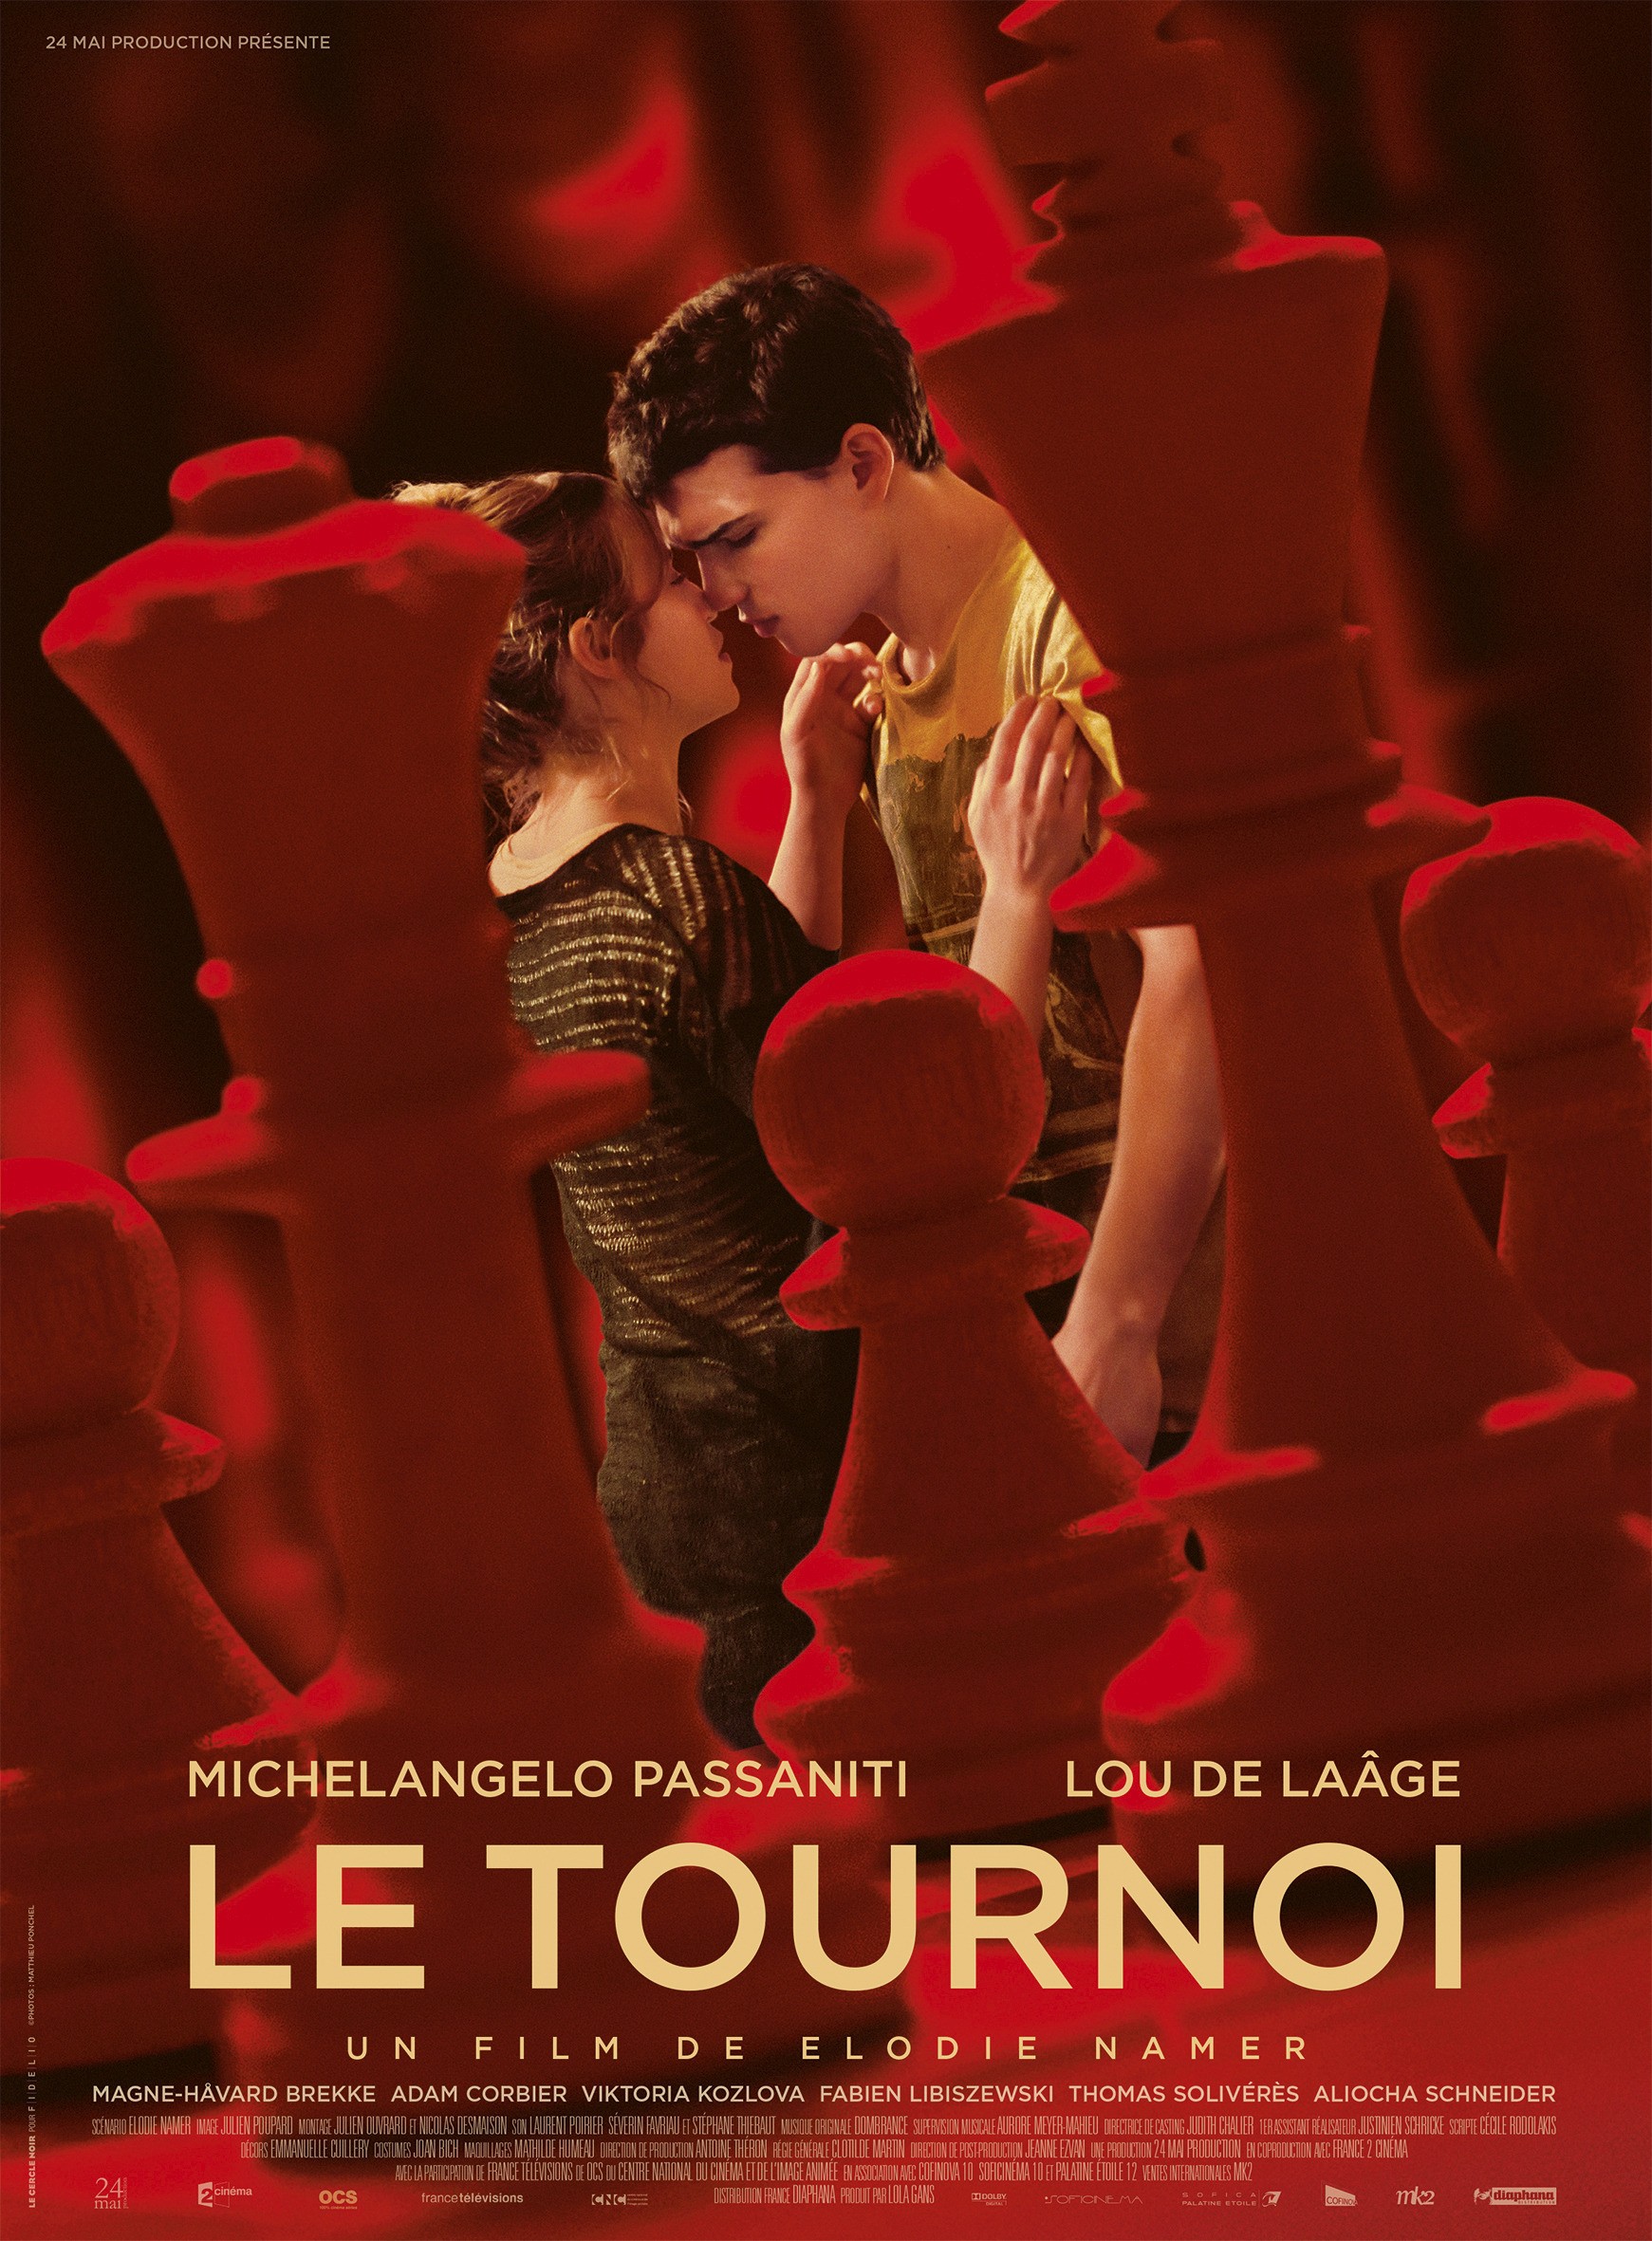 Mega Sized Movie Poster Image for Le tournoi 